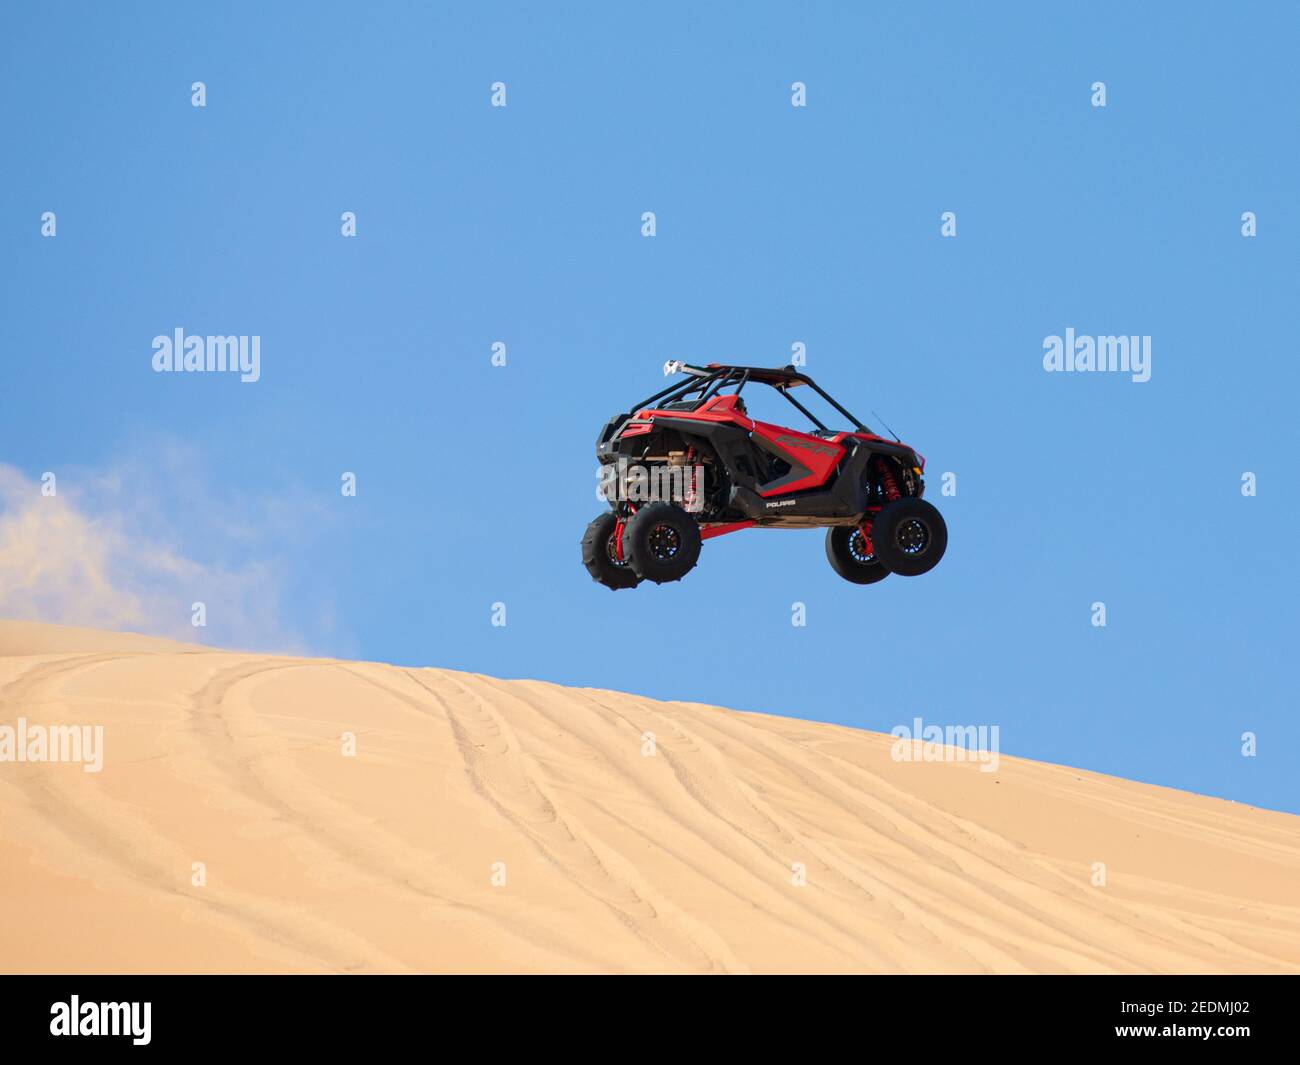 Liwa desert, Abu Dhabi, UAE - Feb 12, 2021: Dune buggy doing jumping tricks in the desert on a sunny day. Stock Photo